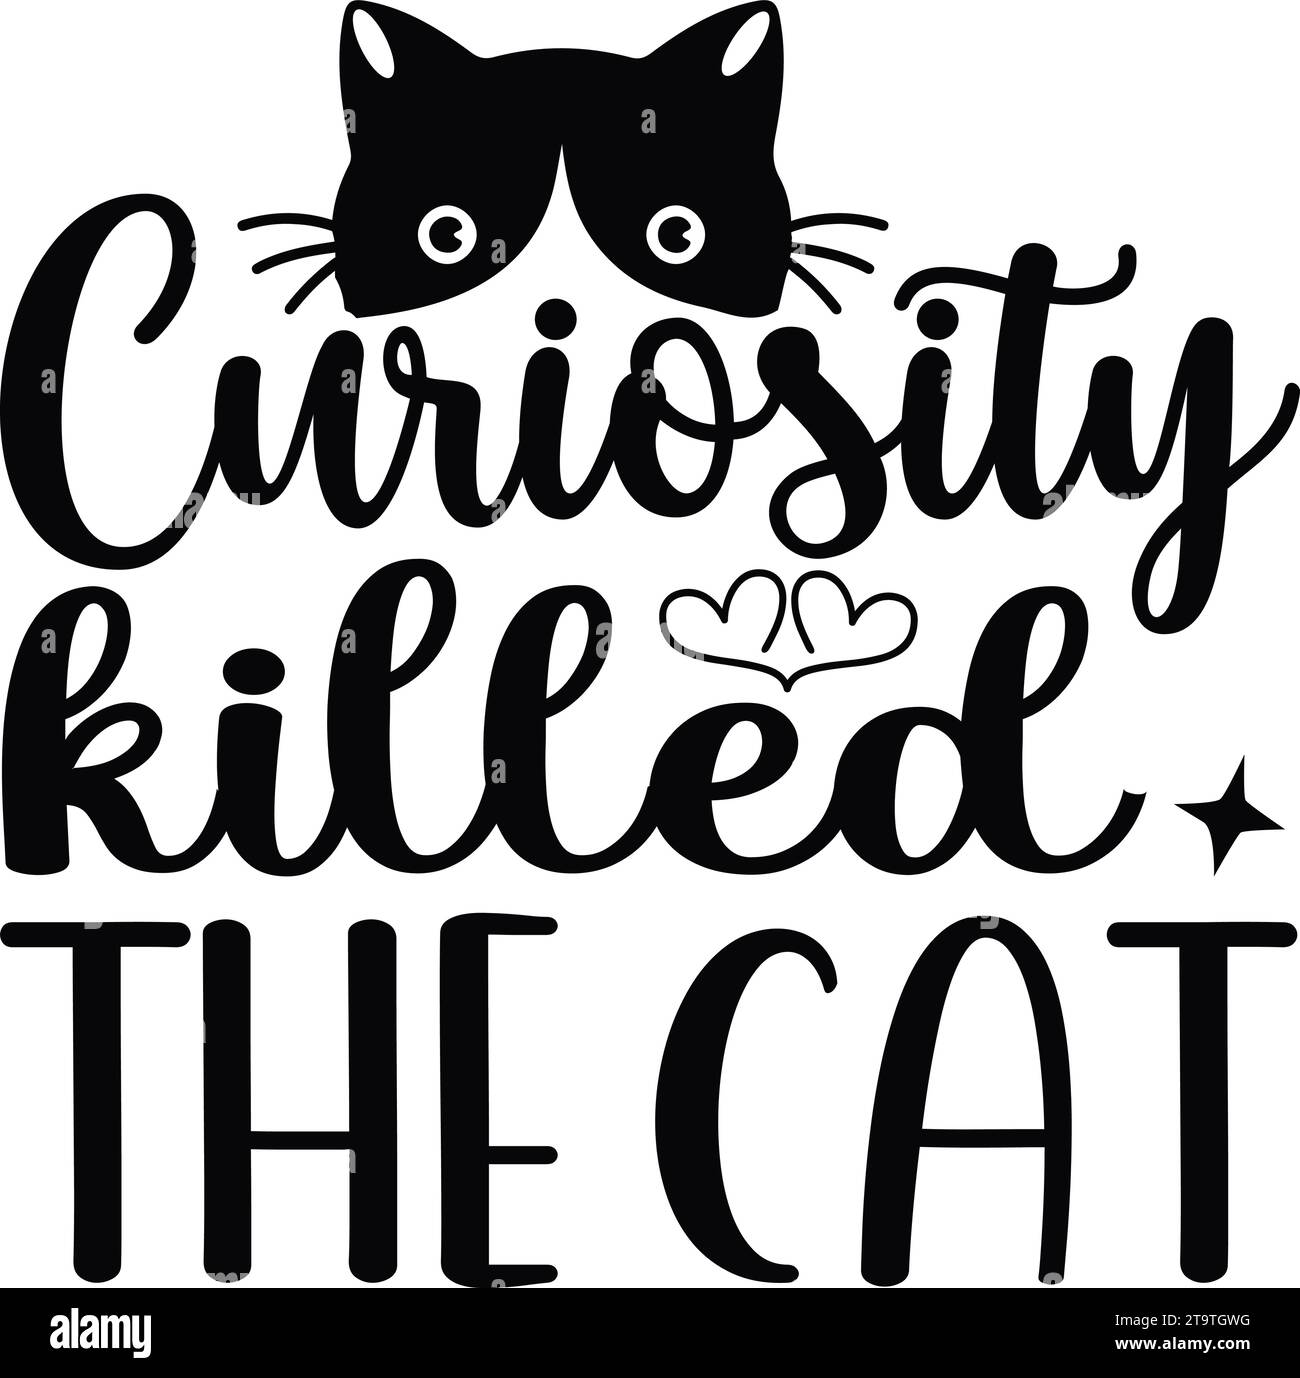 Curiosity Killed the Cat - 2 Stock Vector